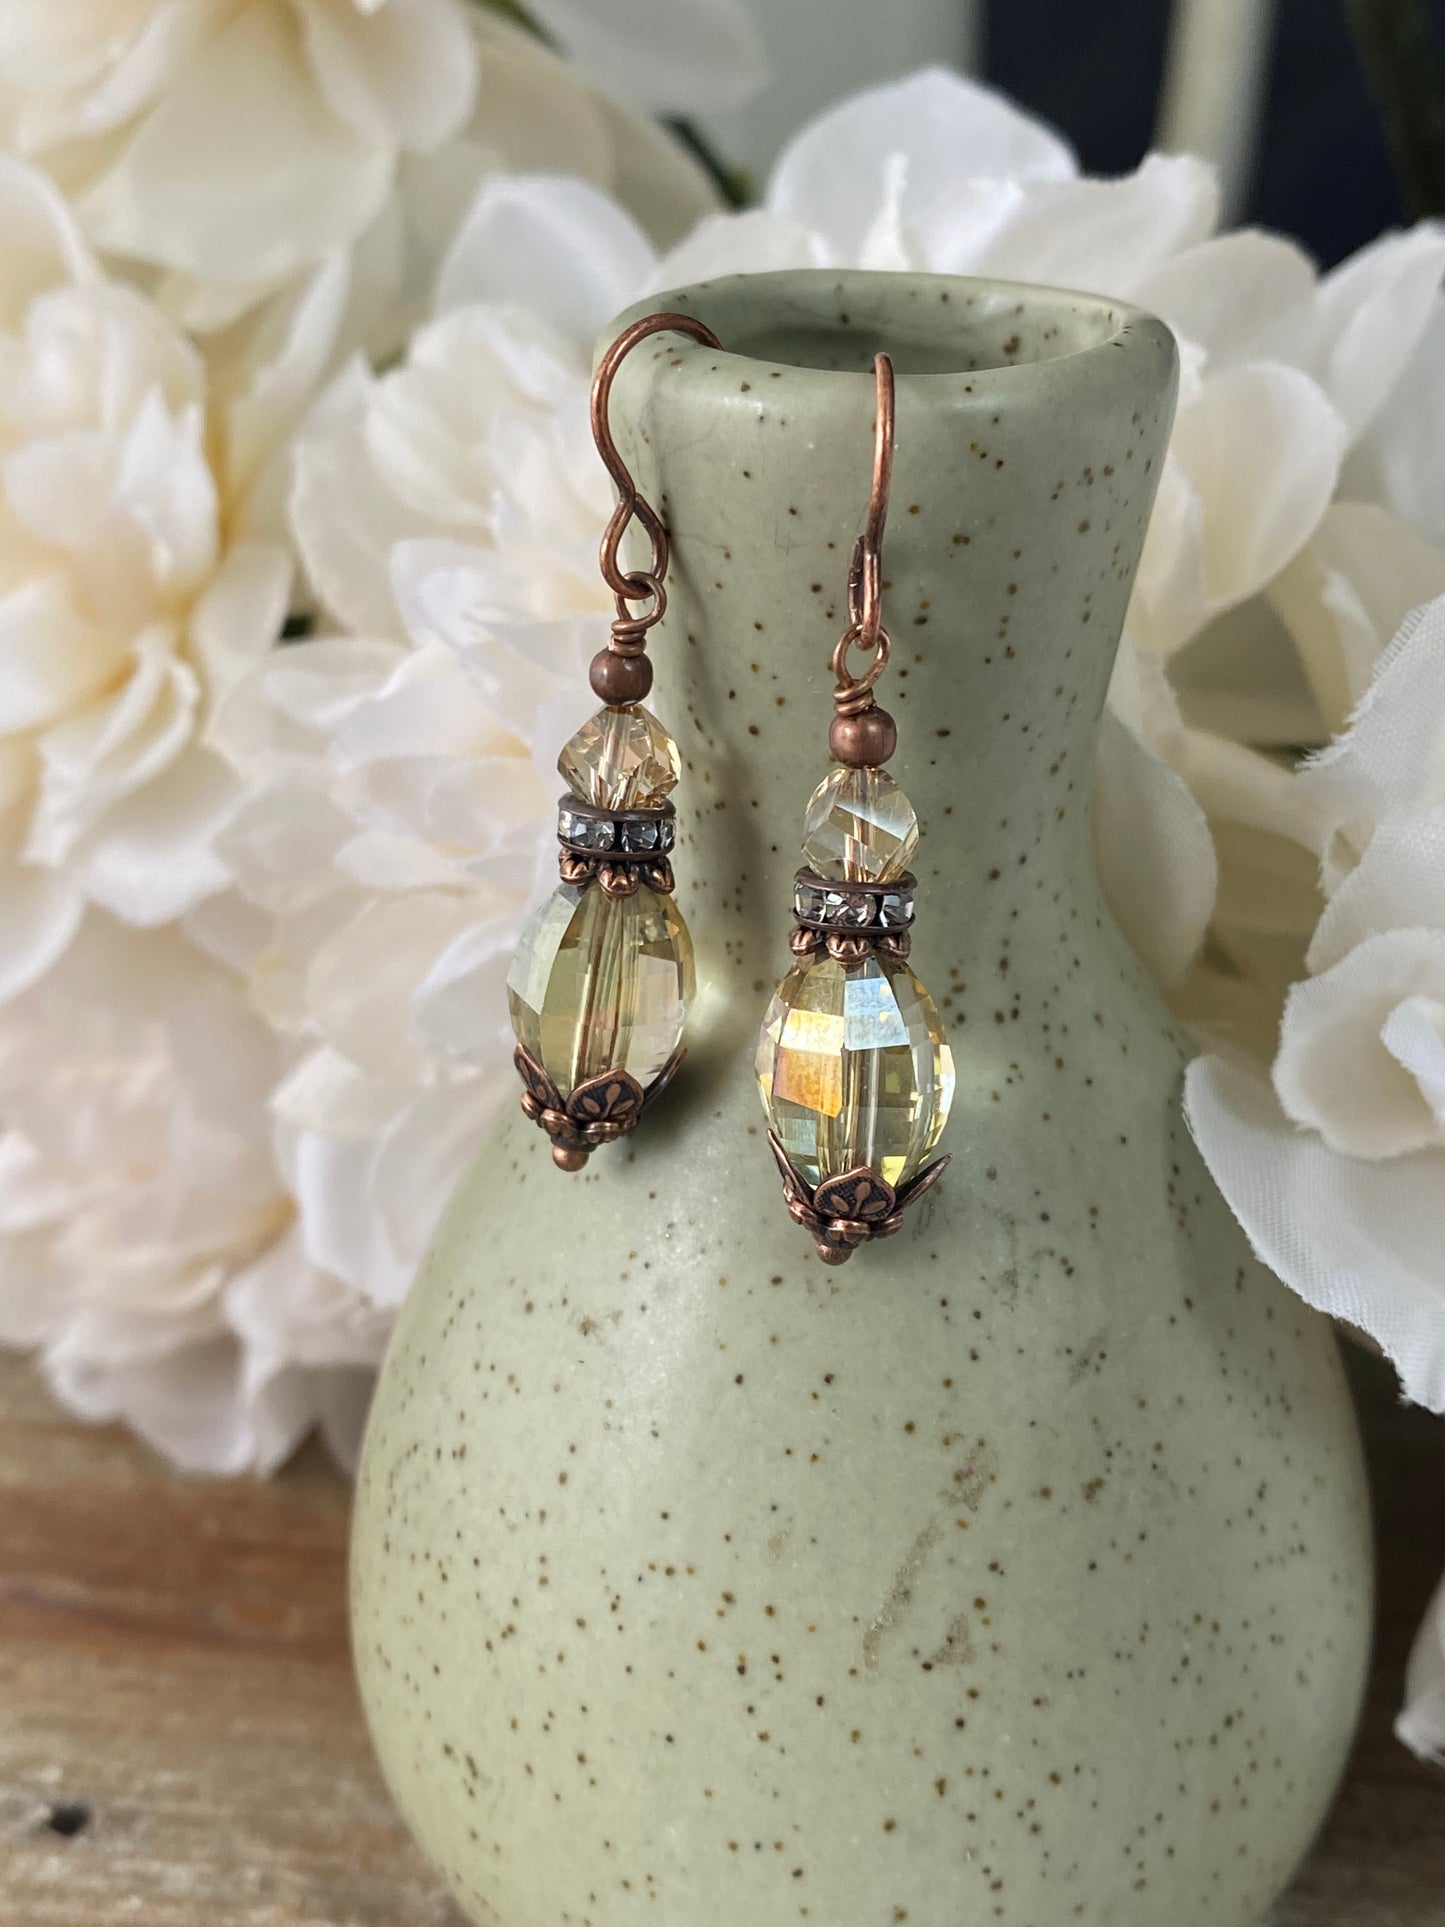 Swarovski crystals, copper metal findings, earrings